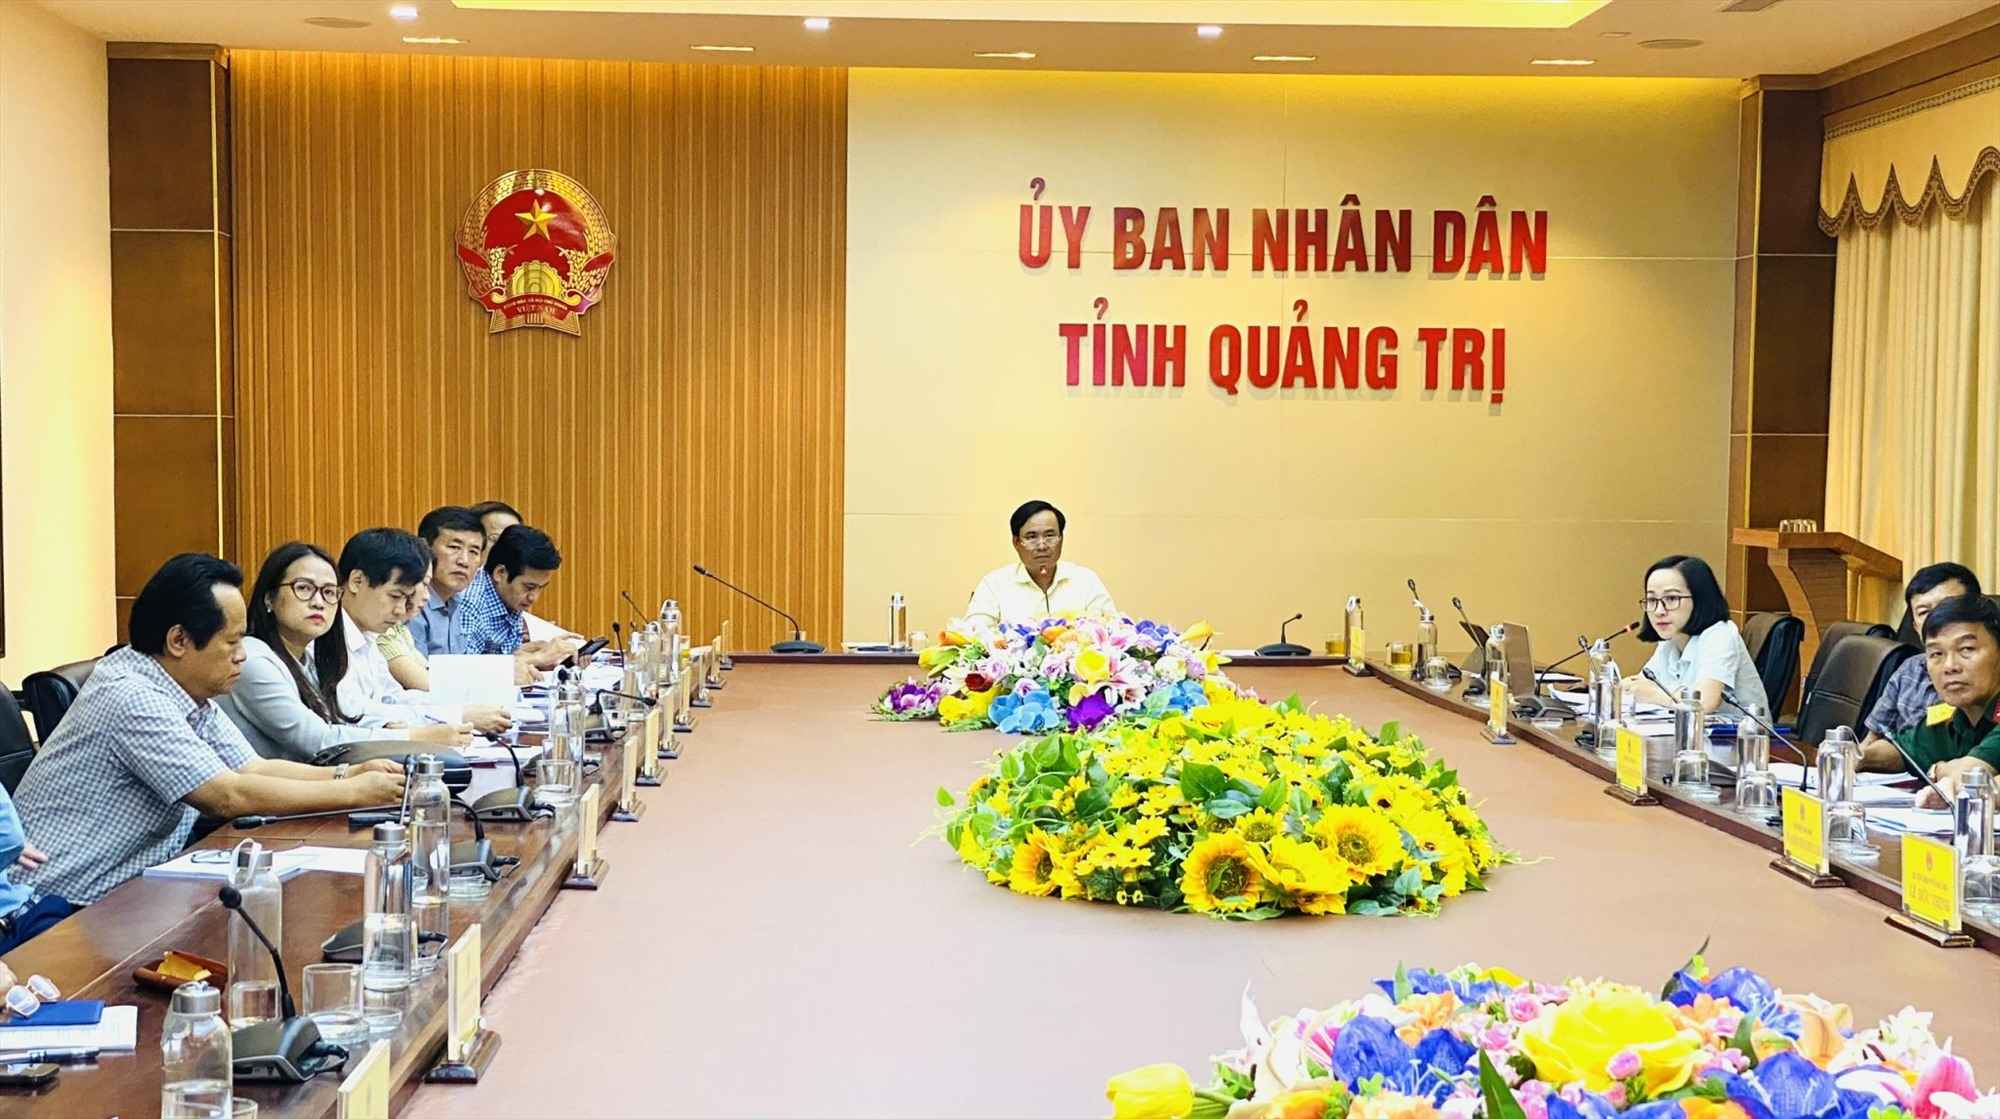 Chủ tịch UBND tỉnh Võ Văn Hưng đề nghị các đơn vị tư vấn hoàn thành bản điều chỉnh quy hoạch trước ngày 15/6 - Ảnh: T.T